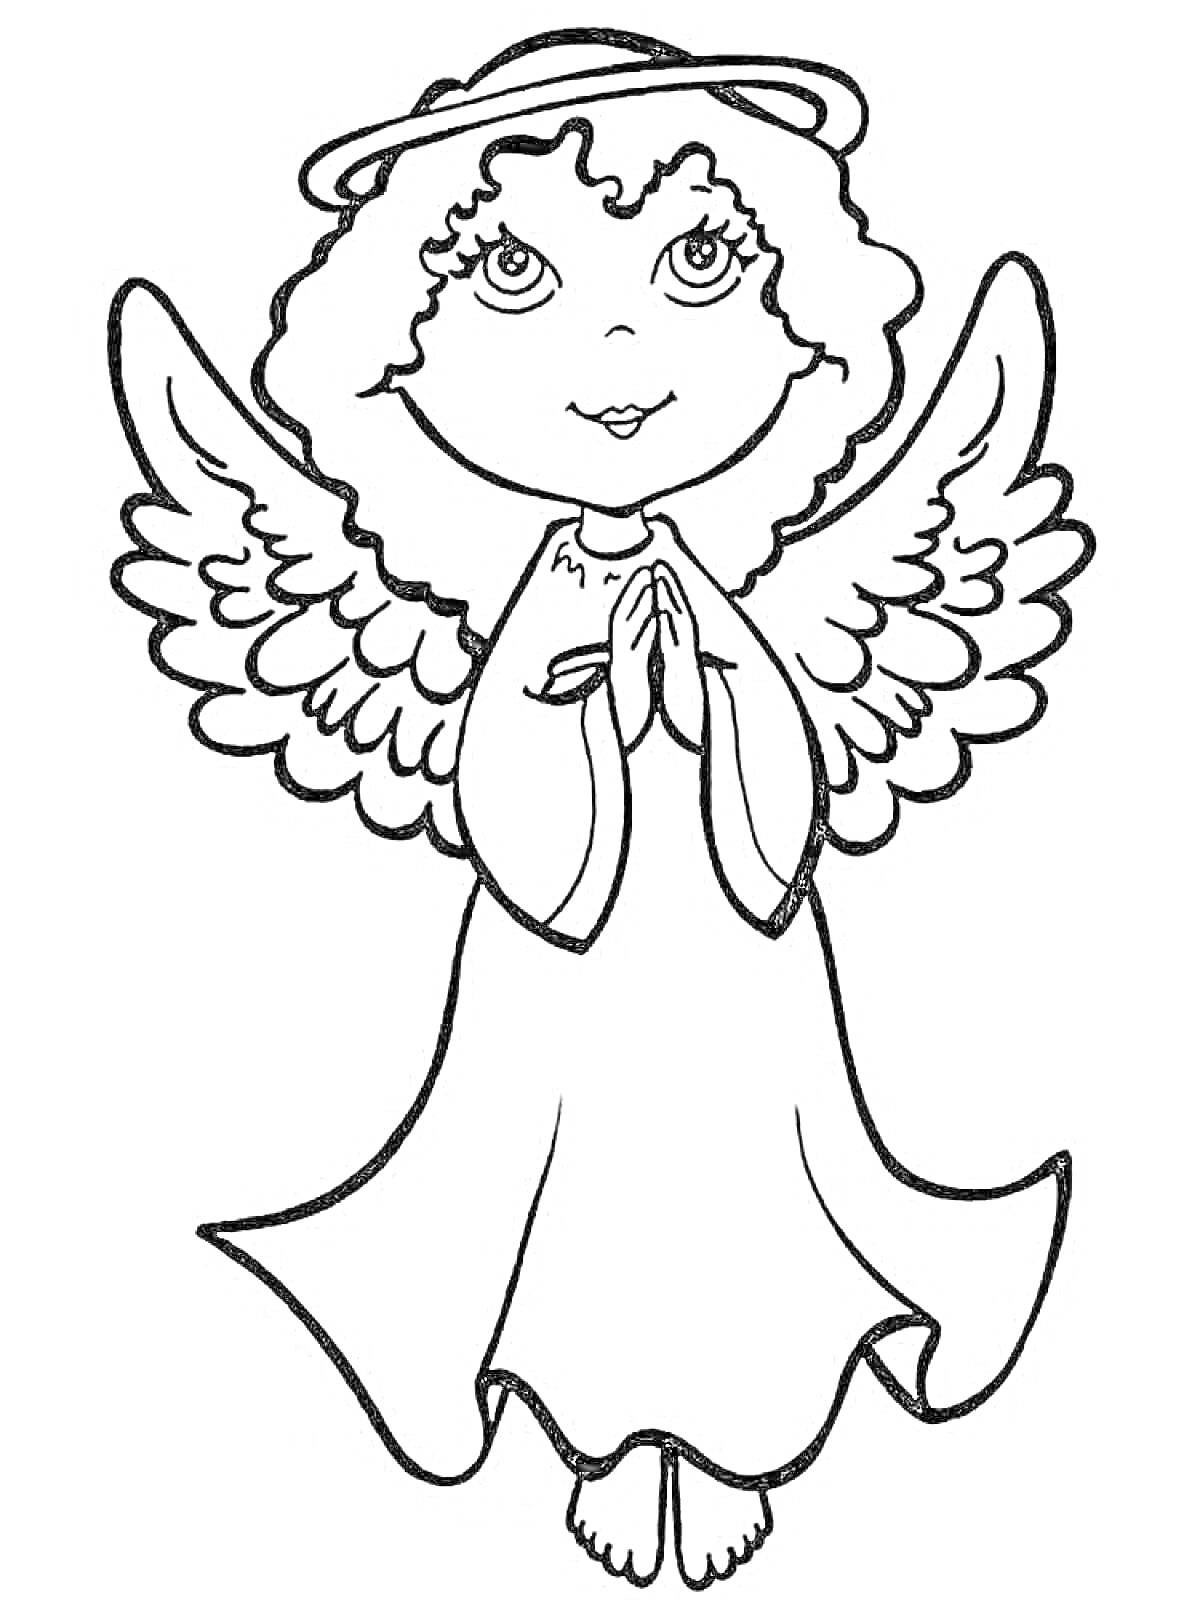 Ангелочек с крыльями и нимбом, сложенные руки в молитве